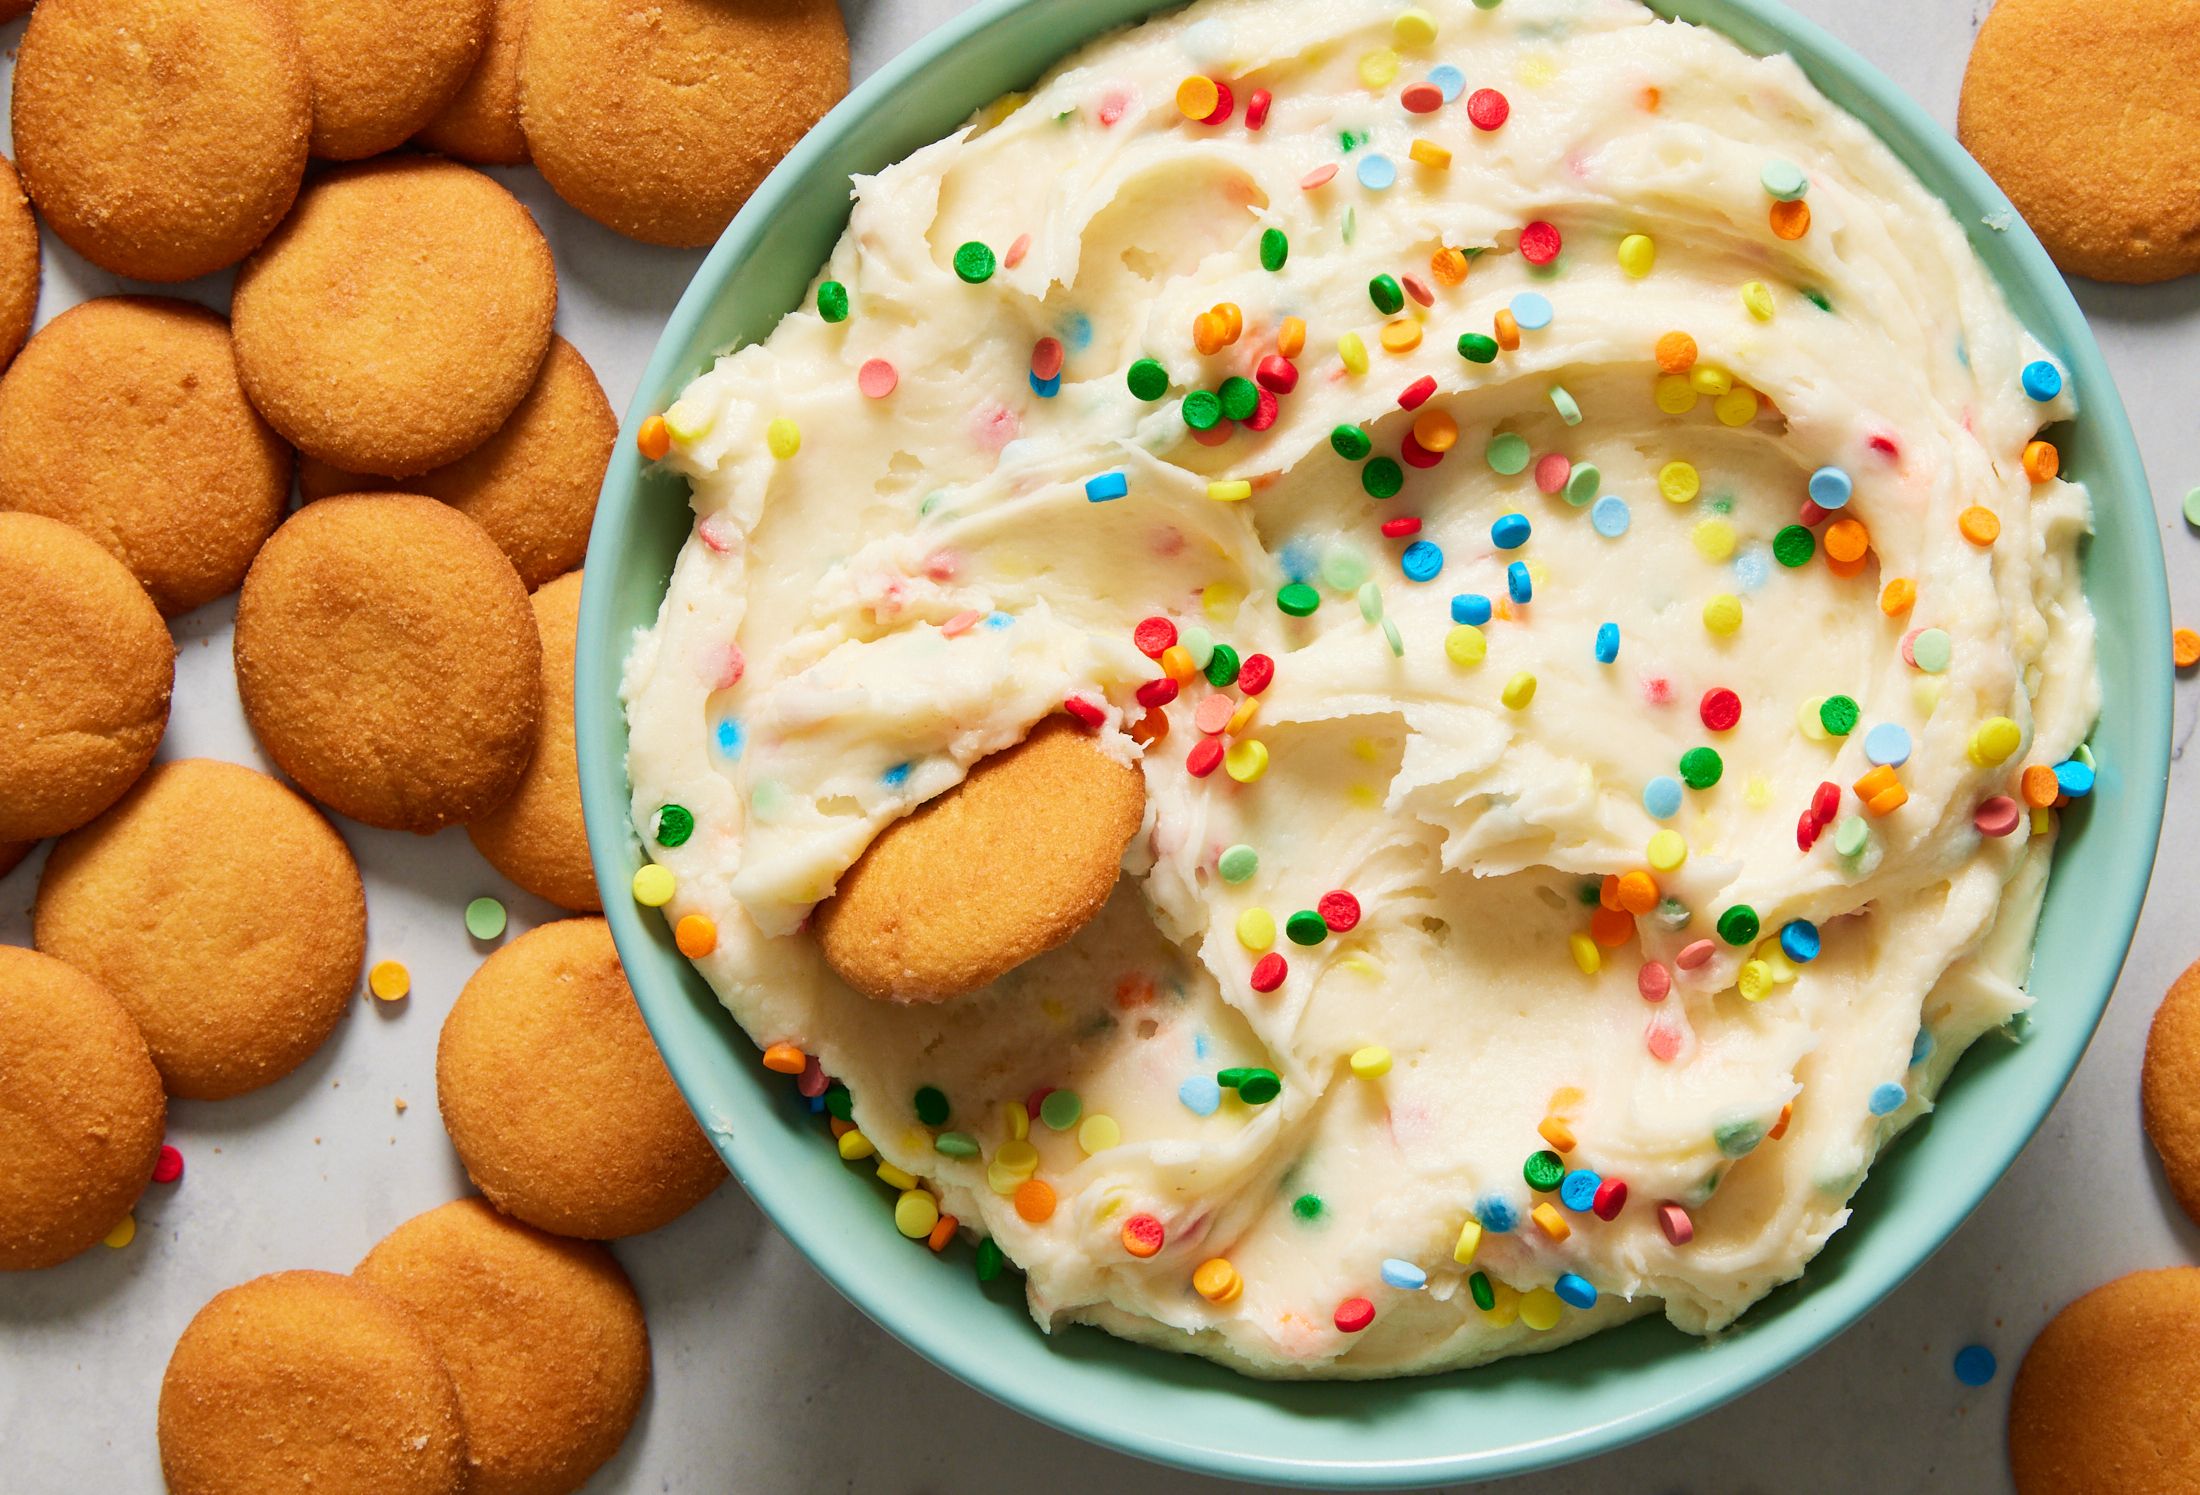 30 Best Sweet Snacks Recipes - Easy Homemade Sweet Snacks